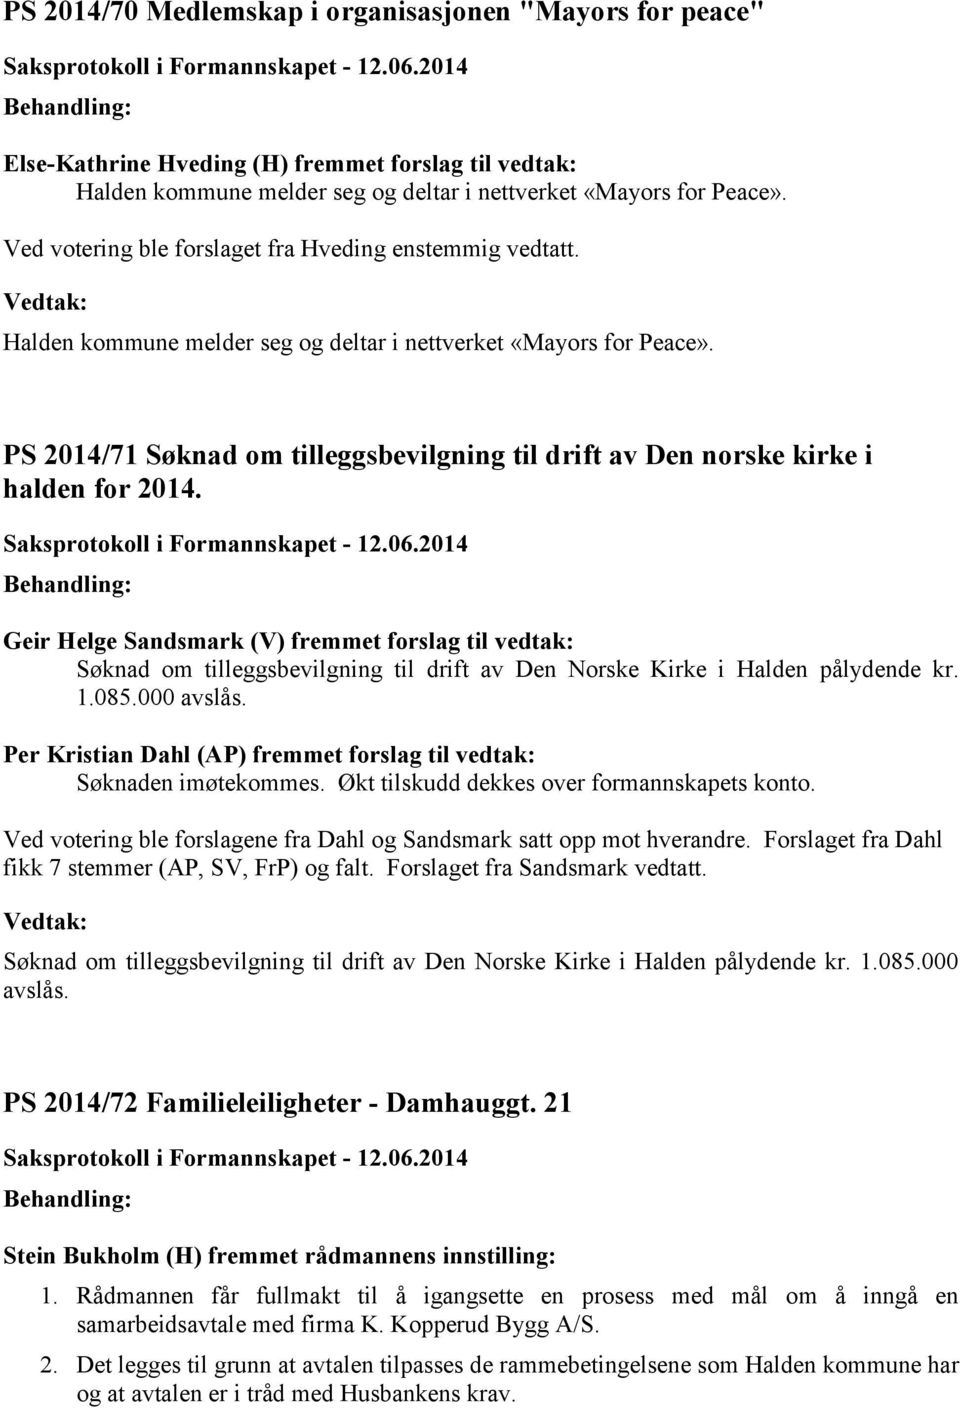 PS 2014/71 Søknad om tilleggsbevilgning til drift av Den norske kirke i halden for 2014.